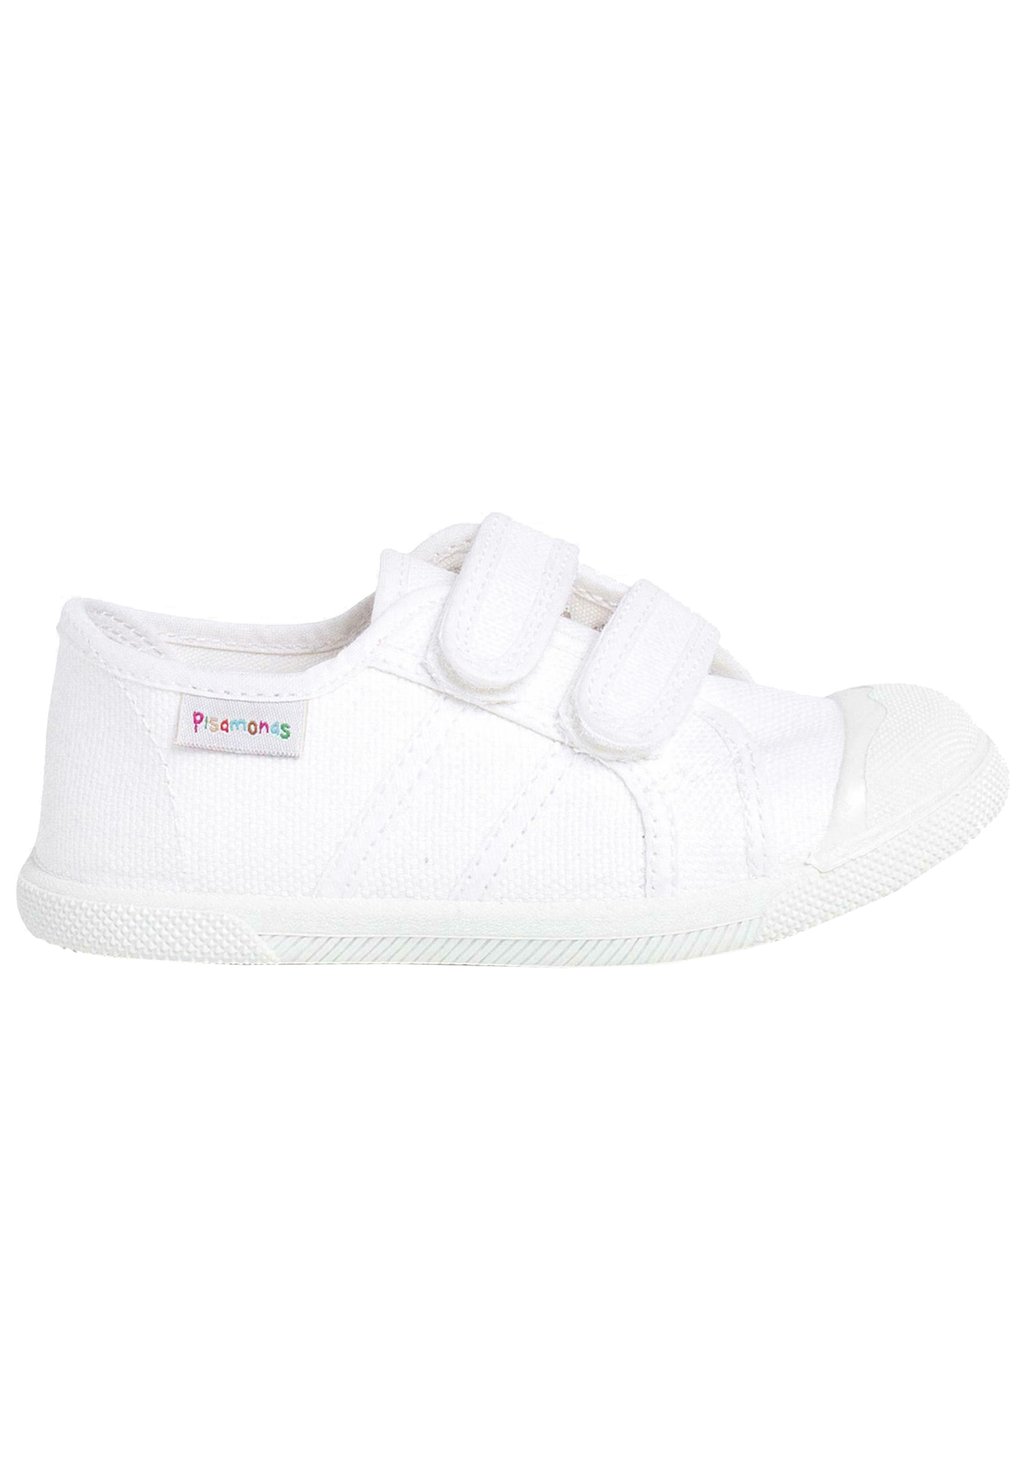 Первая обувь для ходьбы Pisamonas, цвет blanco первая обувь для ходьбы bata цвет bianco